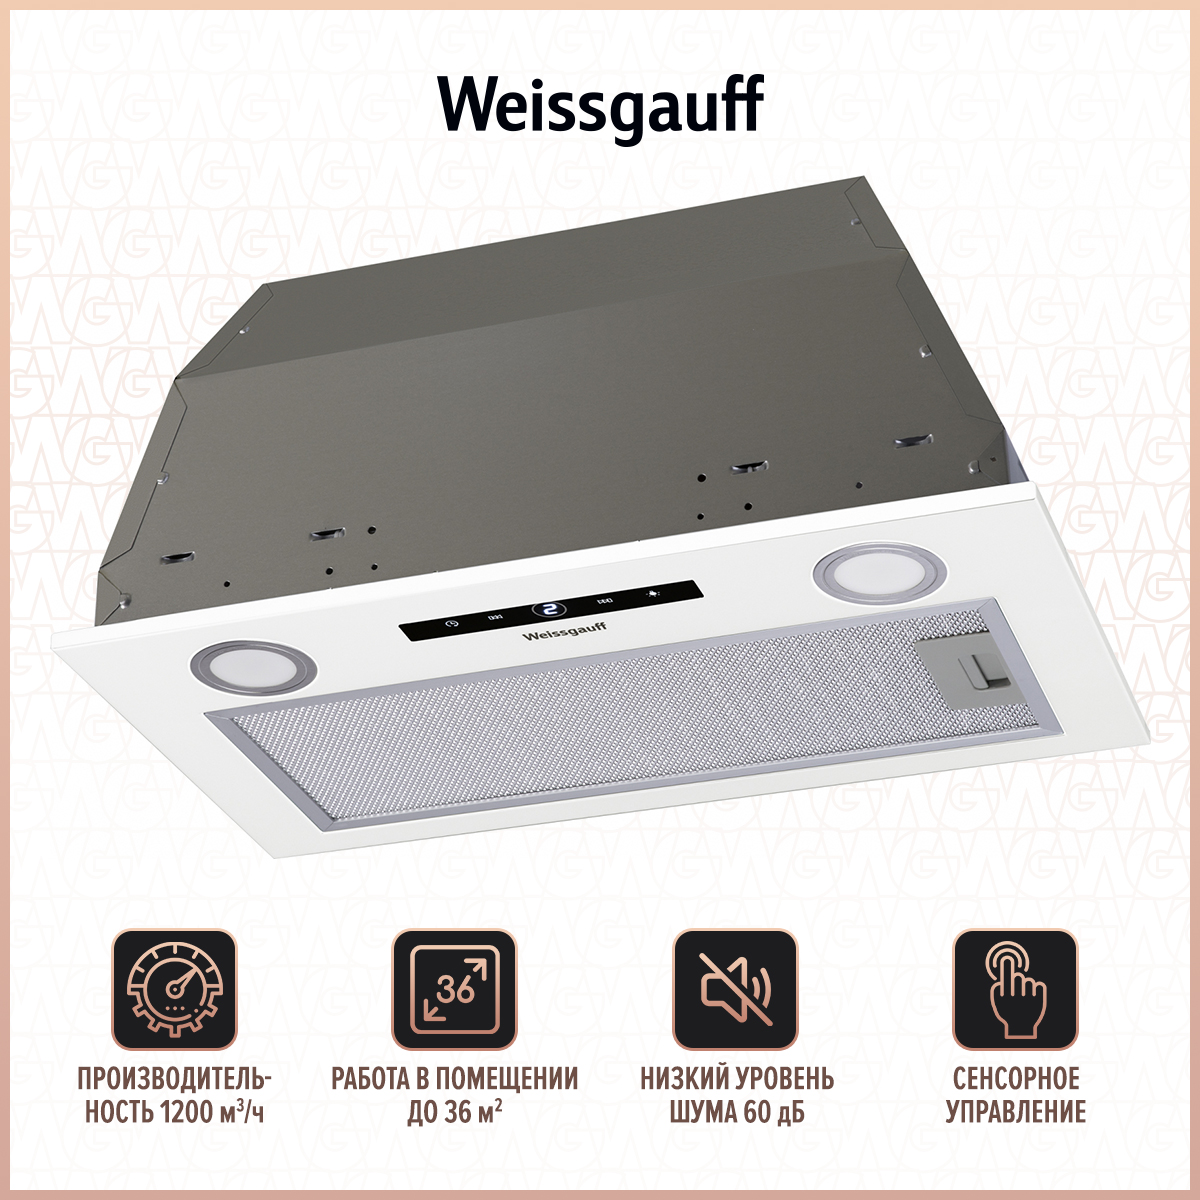 Вытяжка встраиваемая Weissgauff BOX 1200 WH White вытяжка встраиваемая weissgauff box 1200 wh white